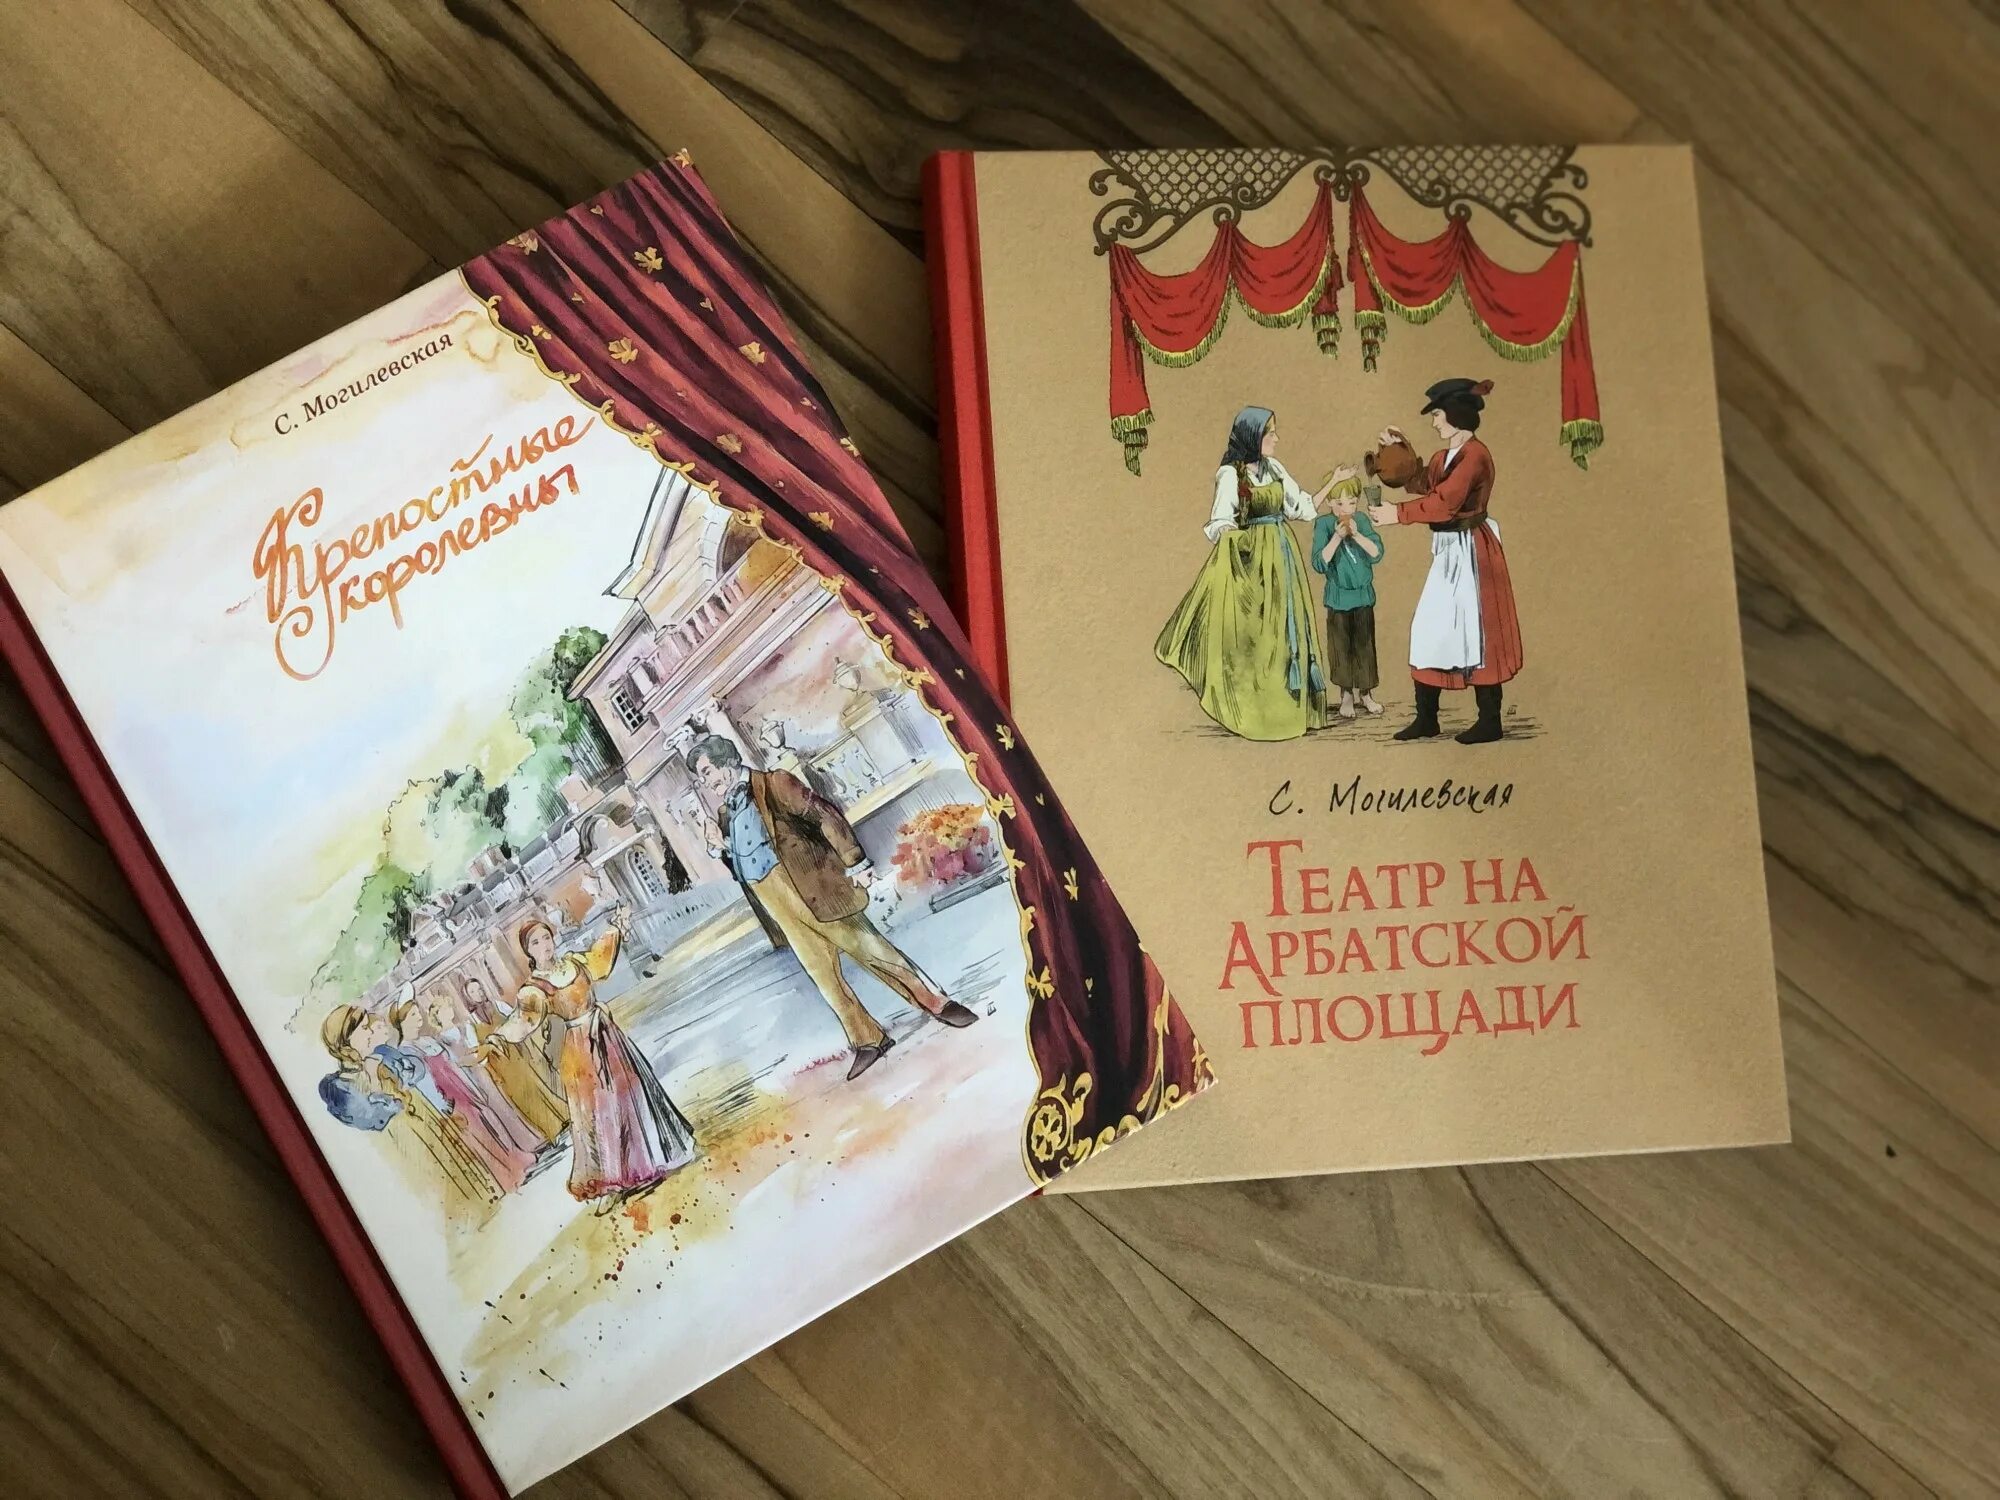 Читаем книги о театре. Крепостные королевны Могилевская. Оформление обложки книги. Книги о театре для детей.